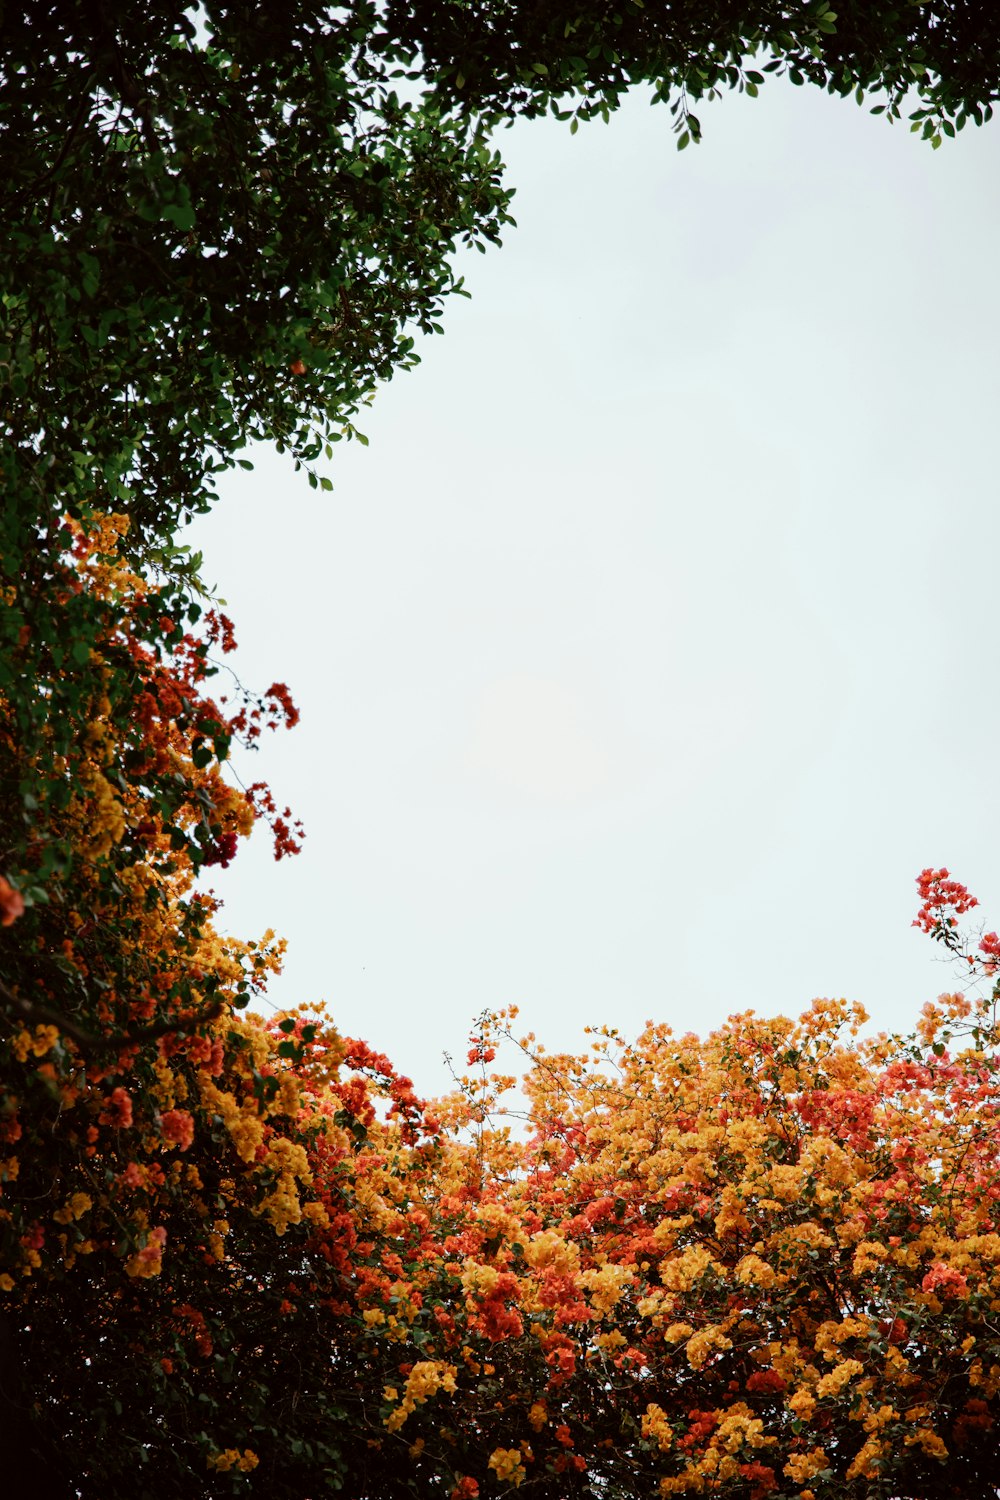 ein Bild von einem Baum mit gelben und roten Blüten